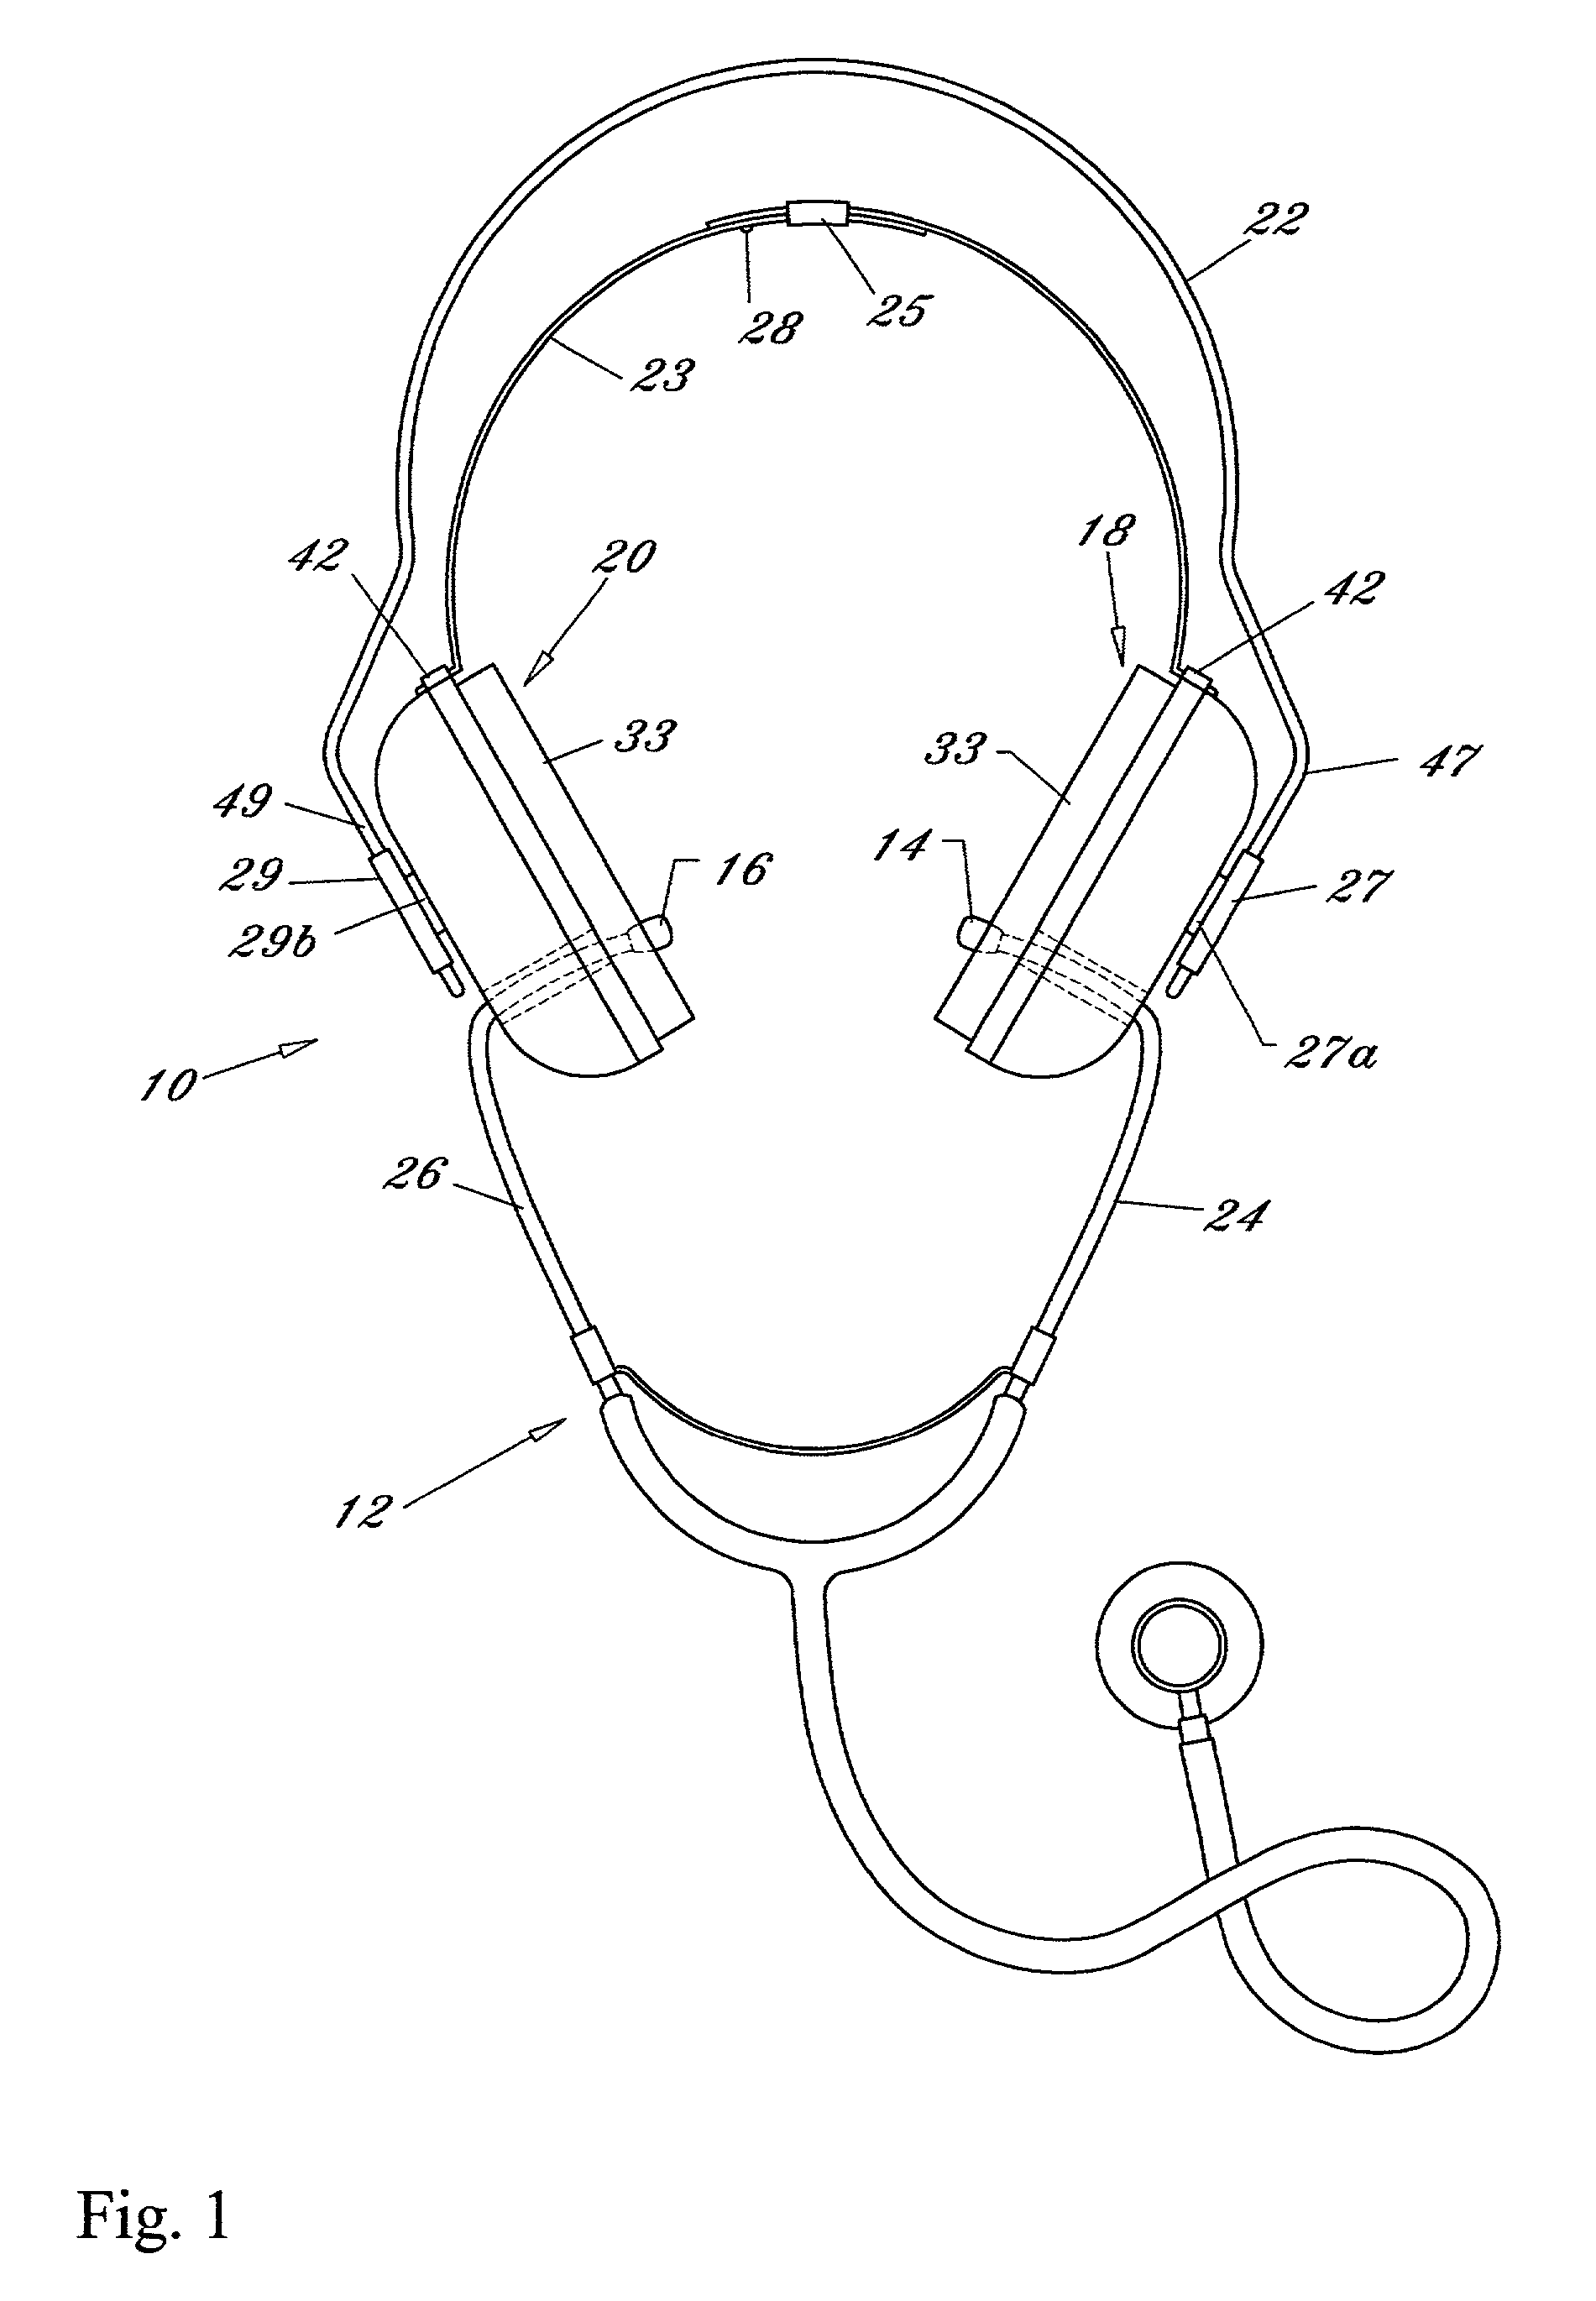 Stethoscope sound isolation headset